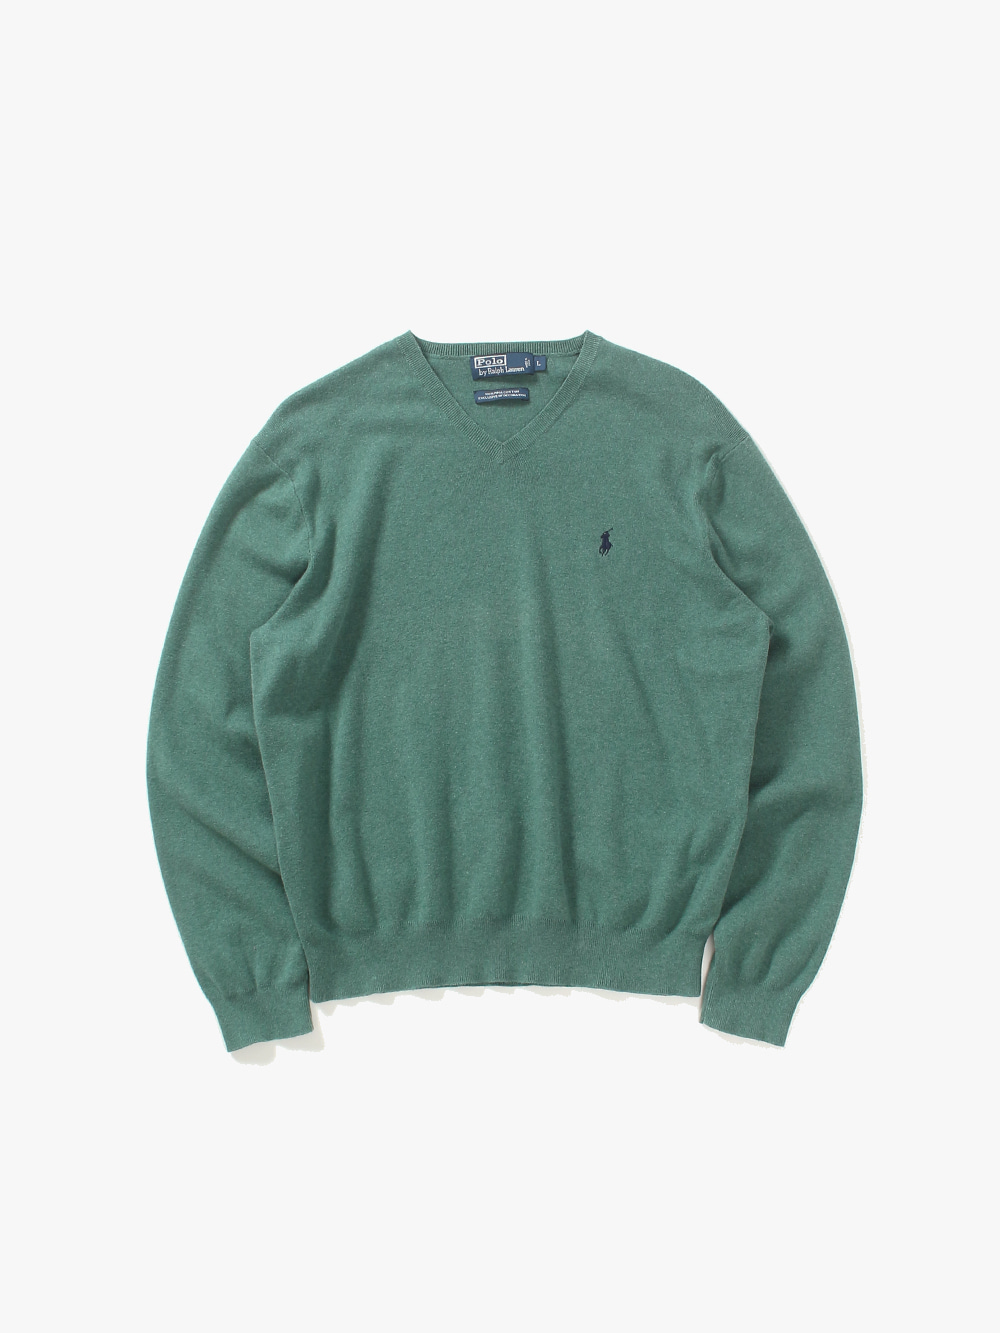 [ L ] Polo Ralph Lauren Sweater (6383)